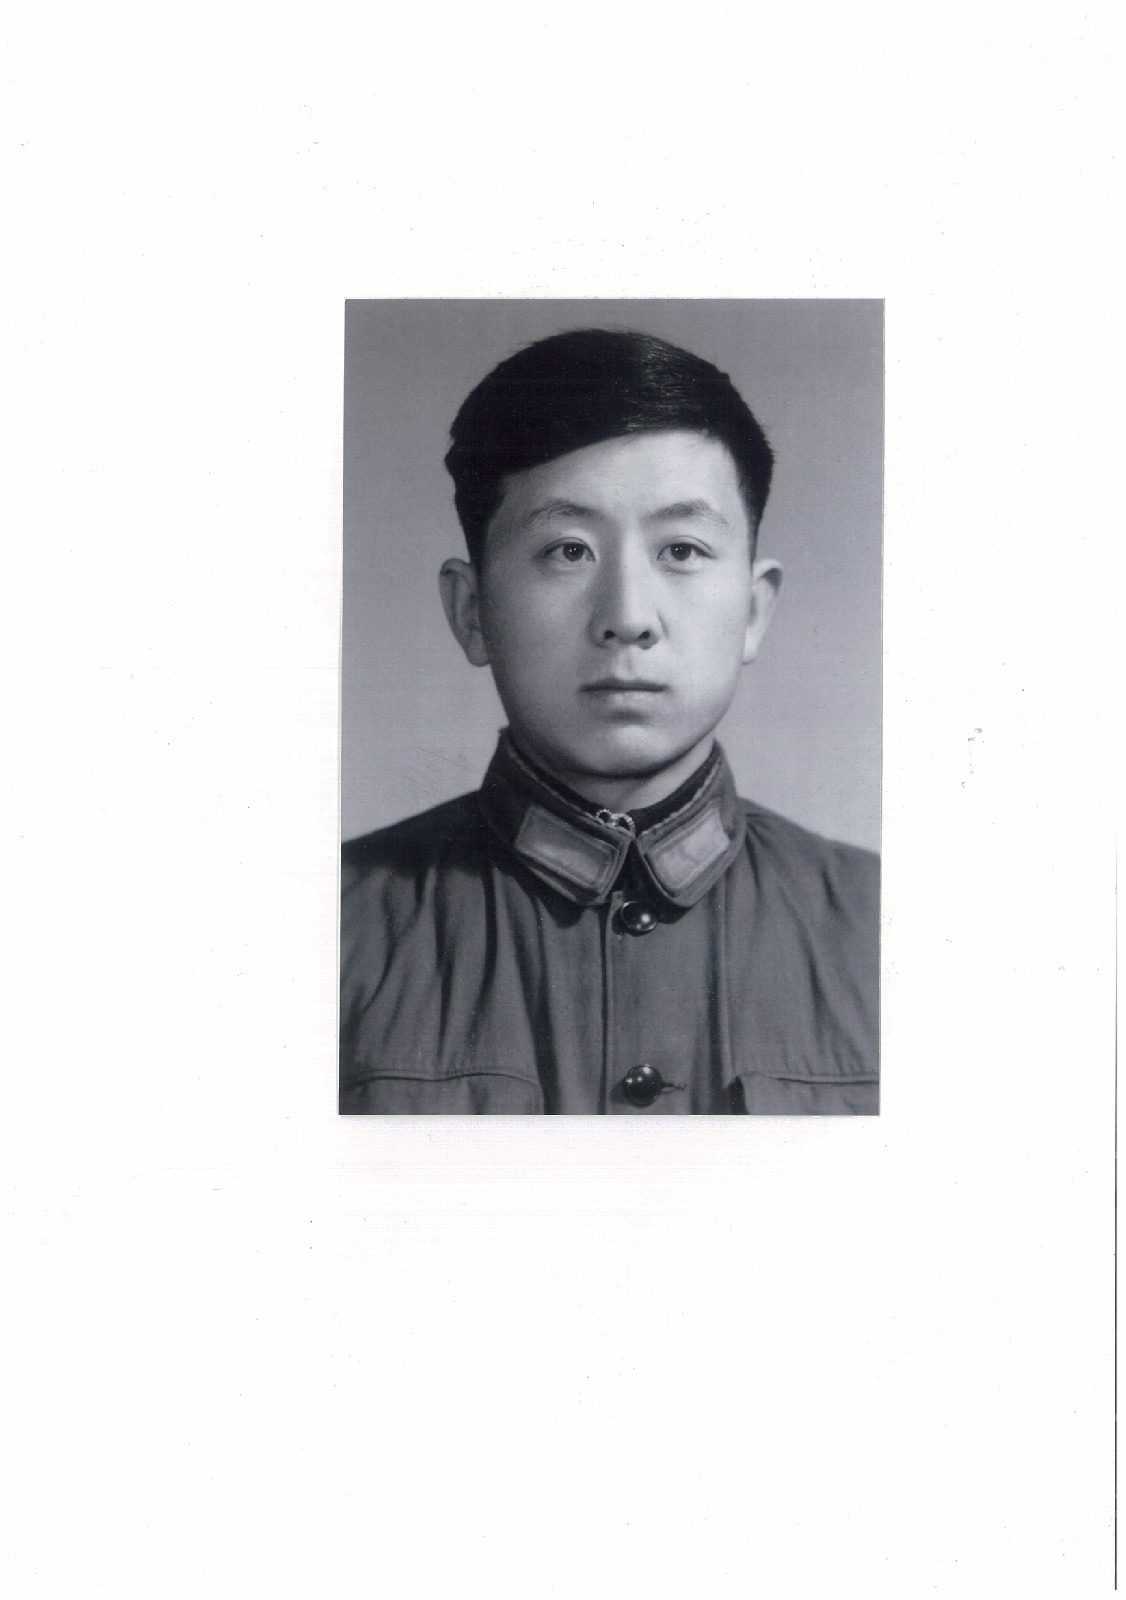 1975年留影於北京通縣。